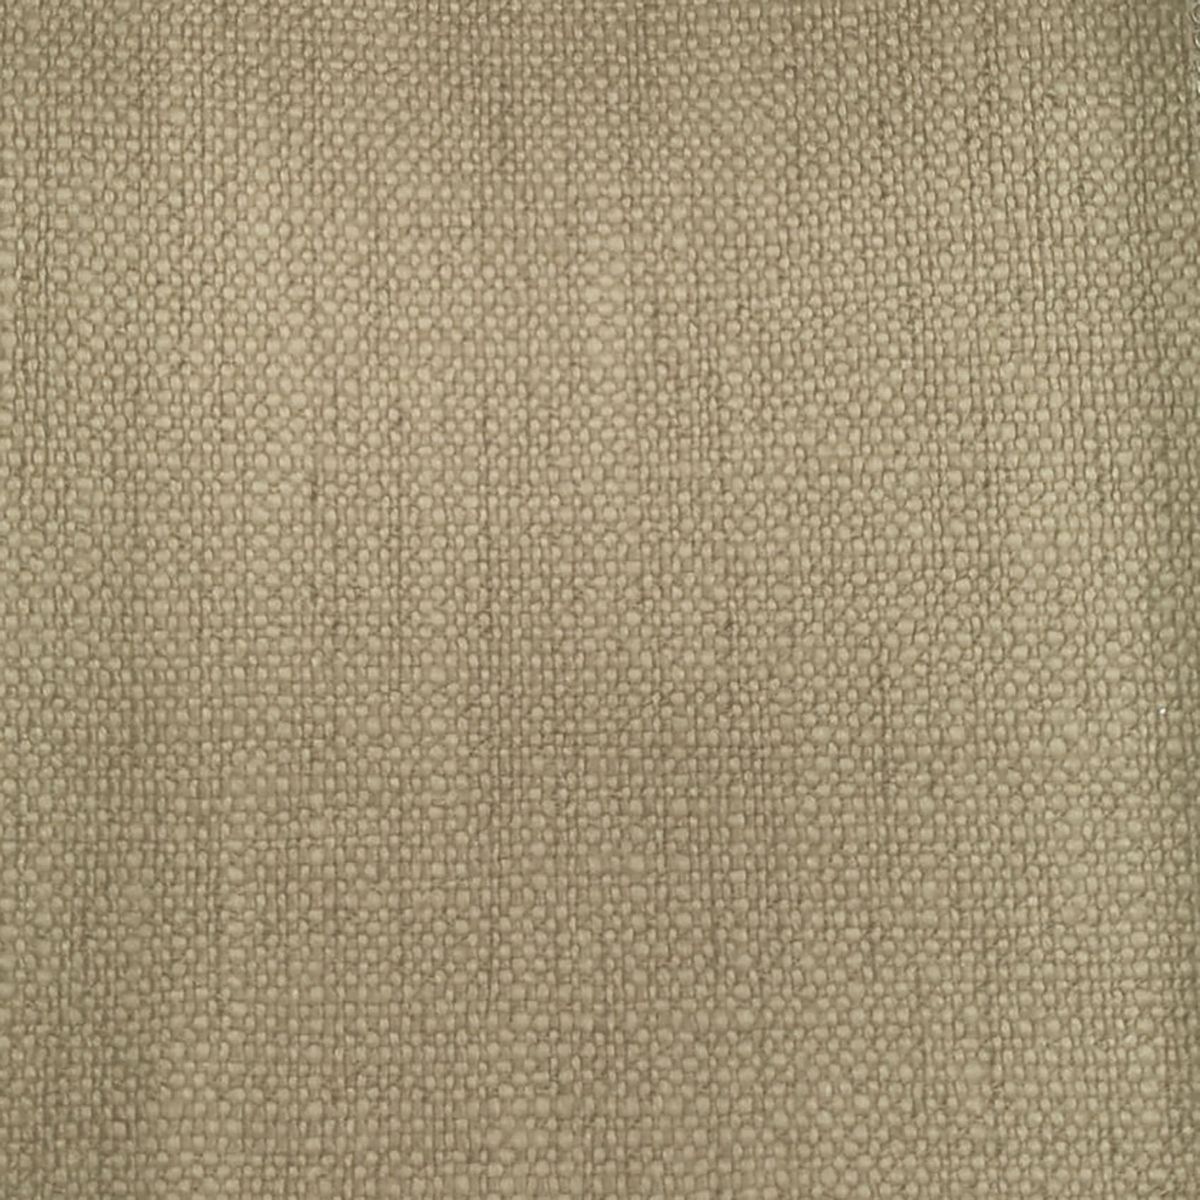 Trento Caramel Fabric by Voyage Maison